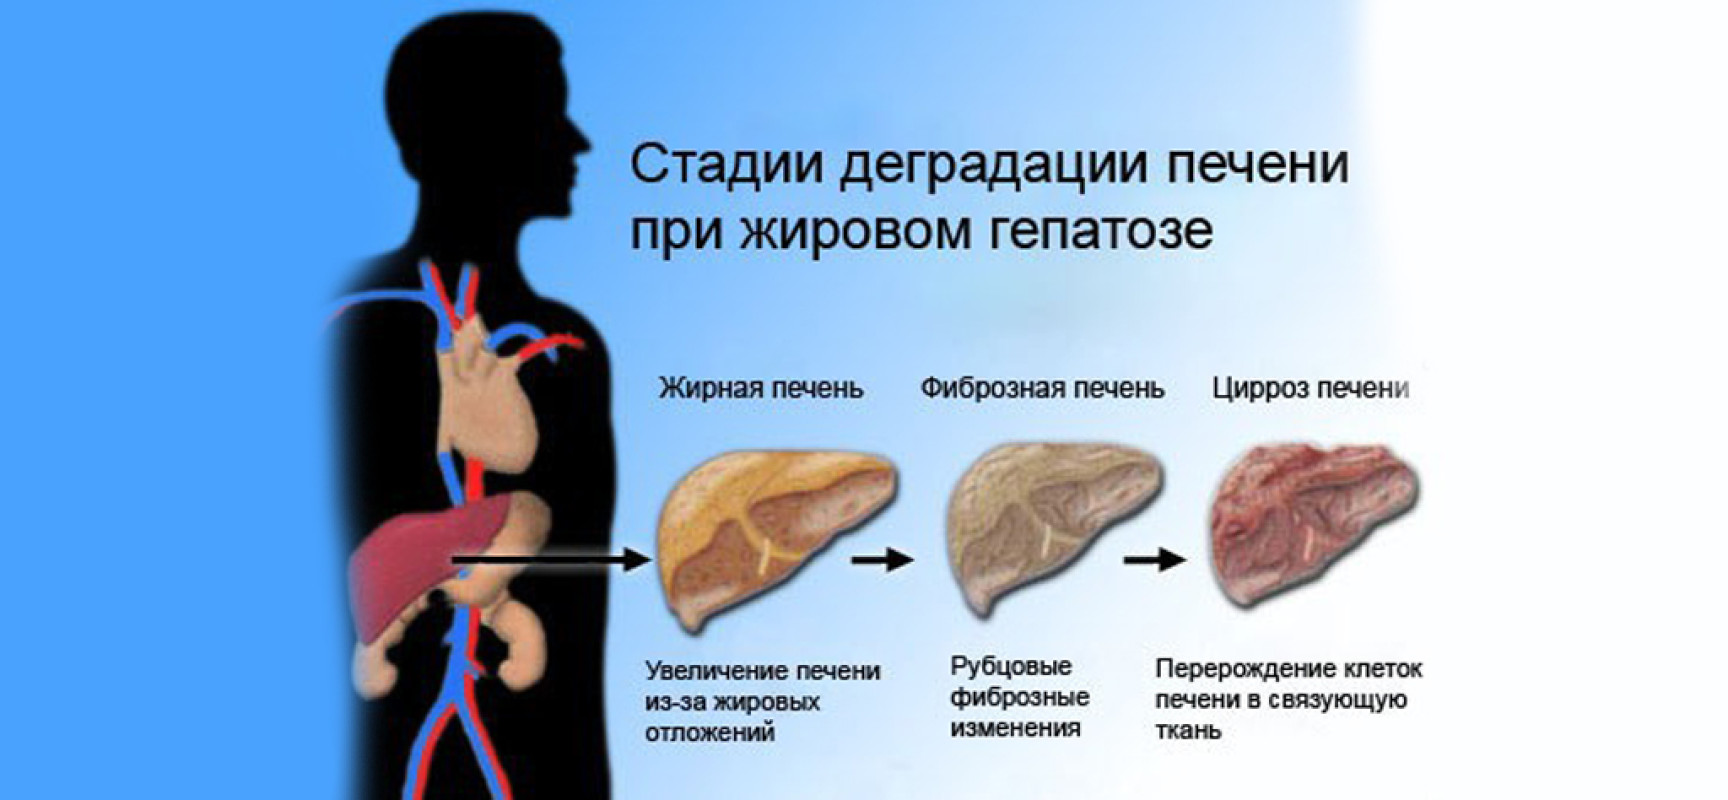 Жирового гепатоза печени